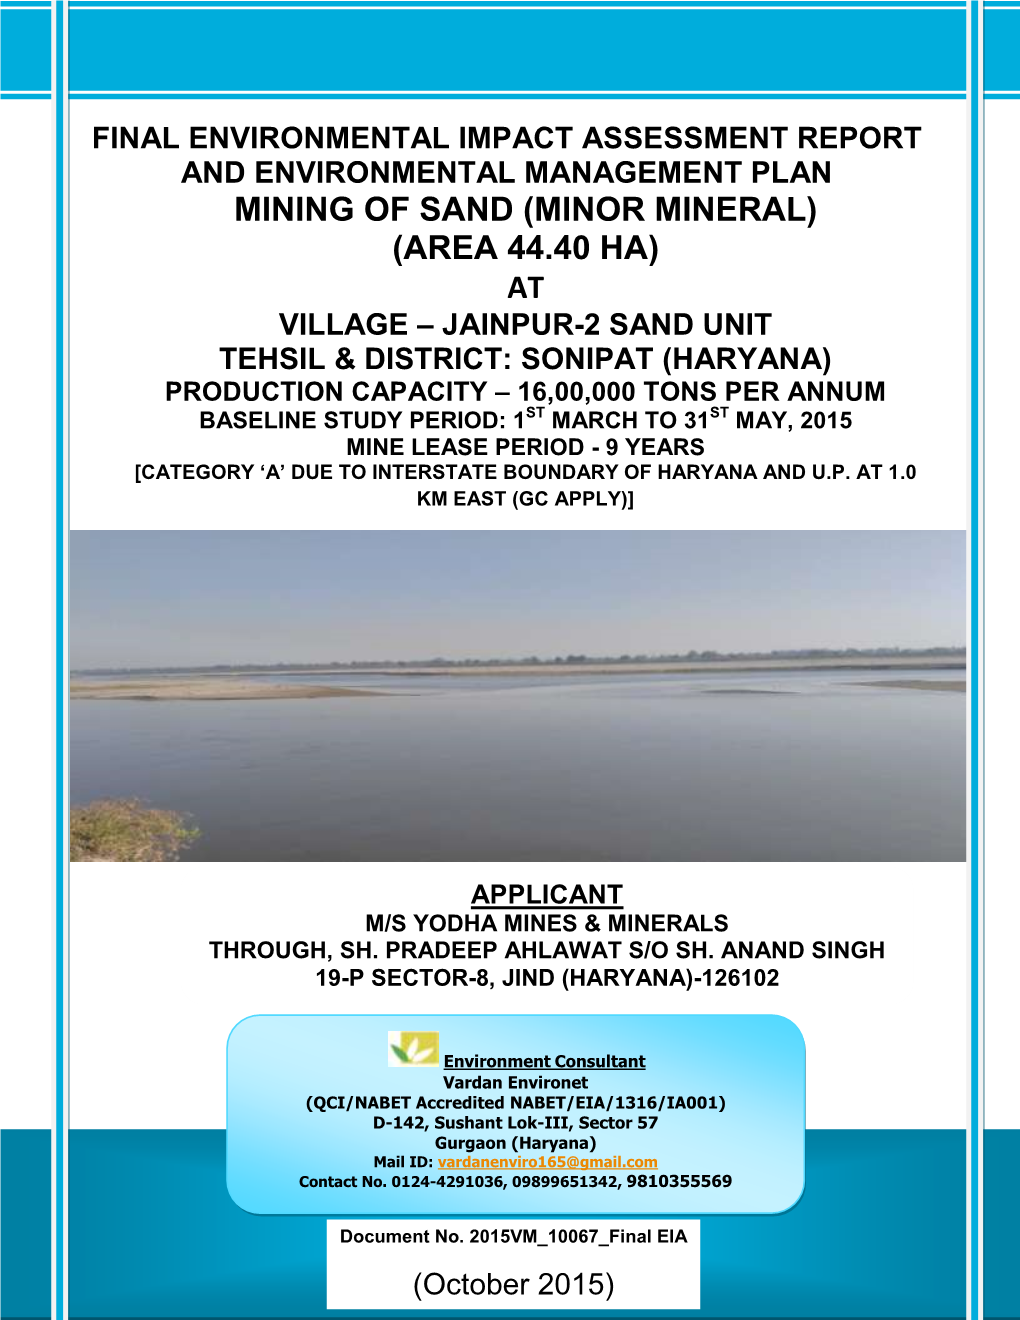 Jainpur-2 Sand Unit Tehsil & District: Sonipat (Haryana)